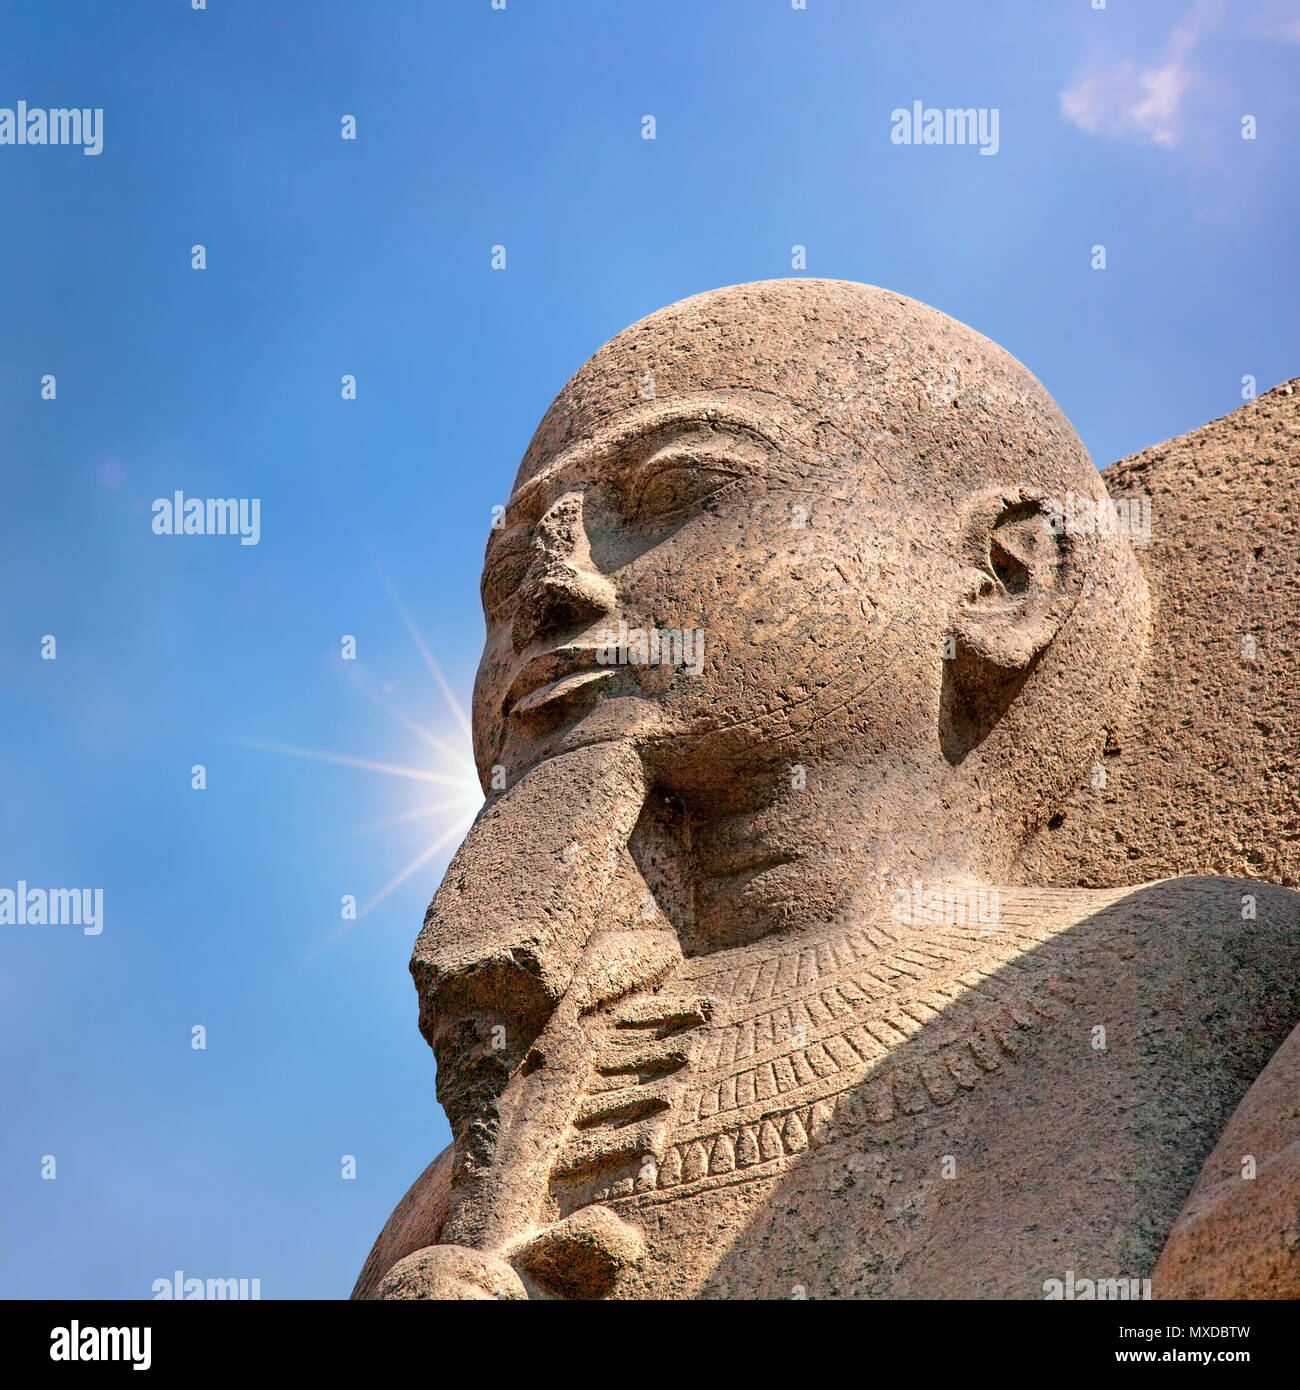 La sculpture de l'ancienne Egypte au Caire, Égypte, sur fond de ciel bleu avec sun flare. Banque D'Images